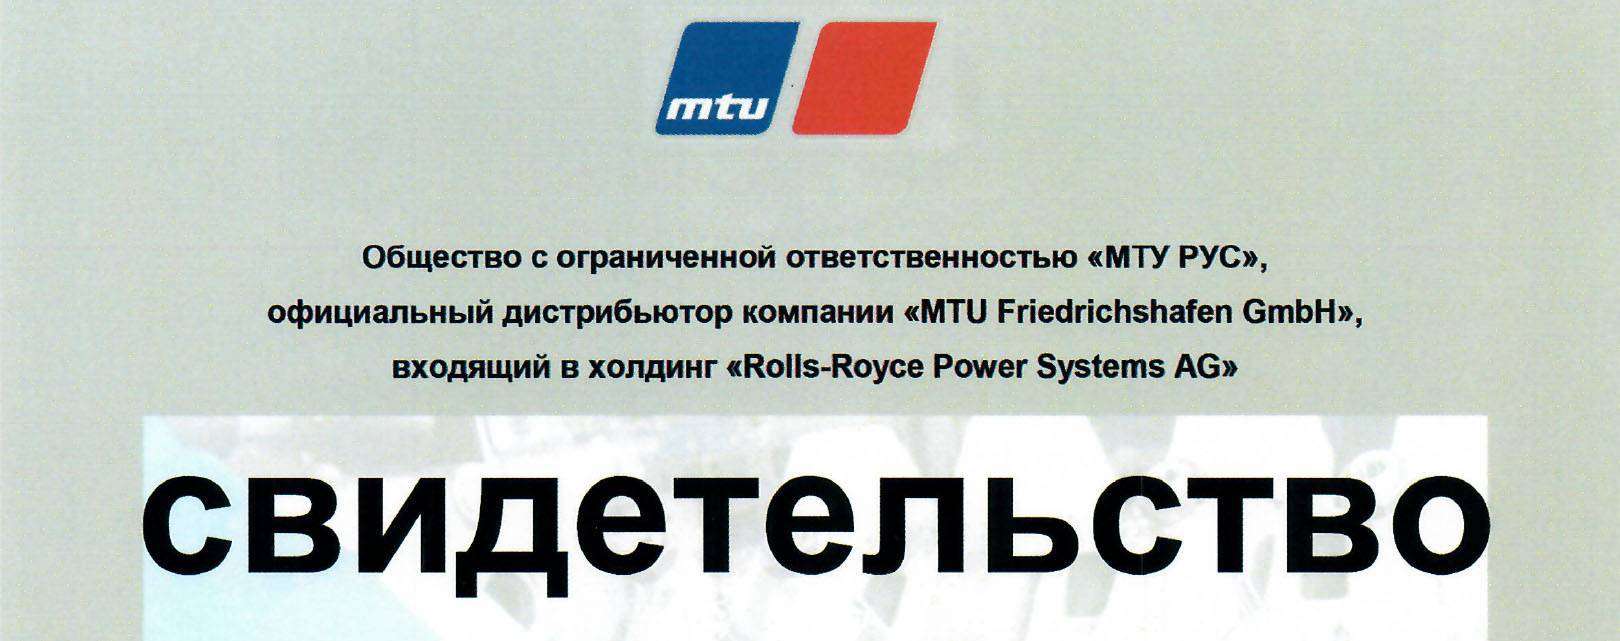 ROLT подтверждает статус сервисного партнера MTU